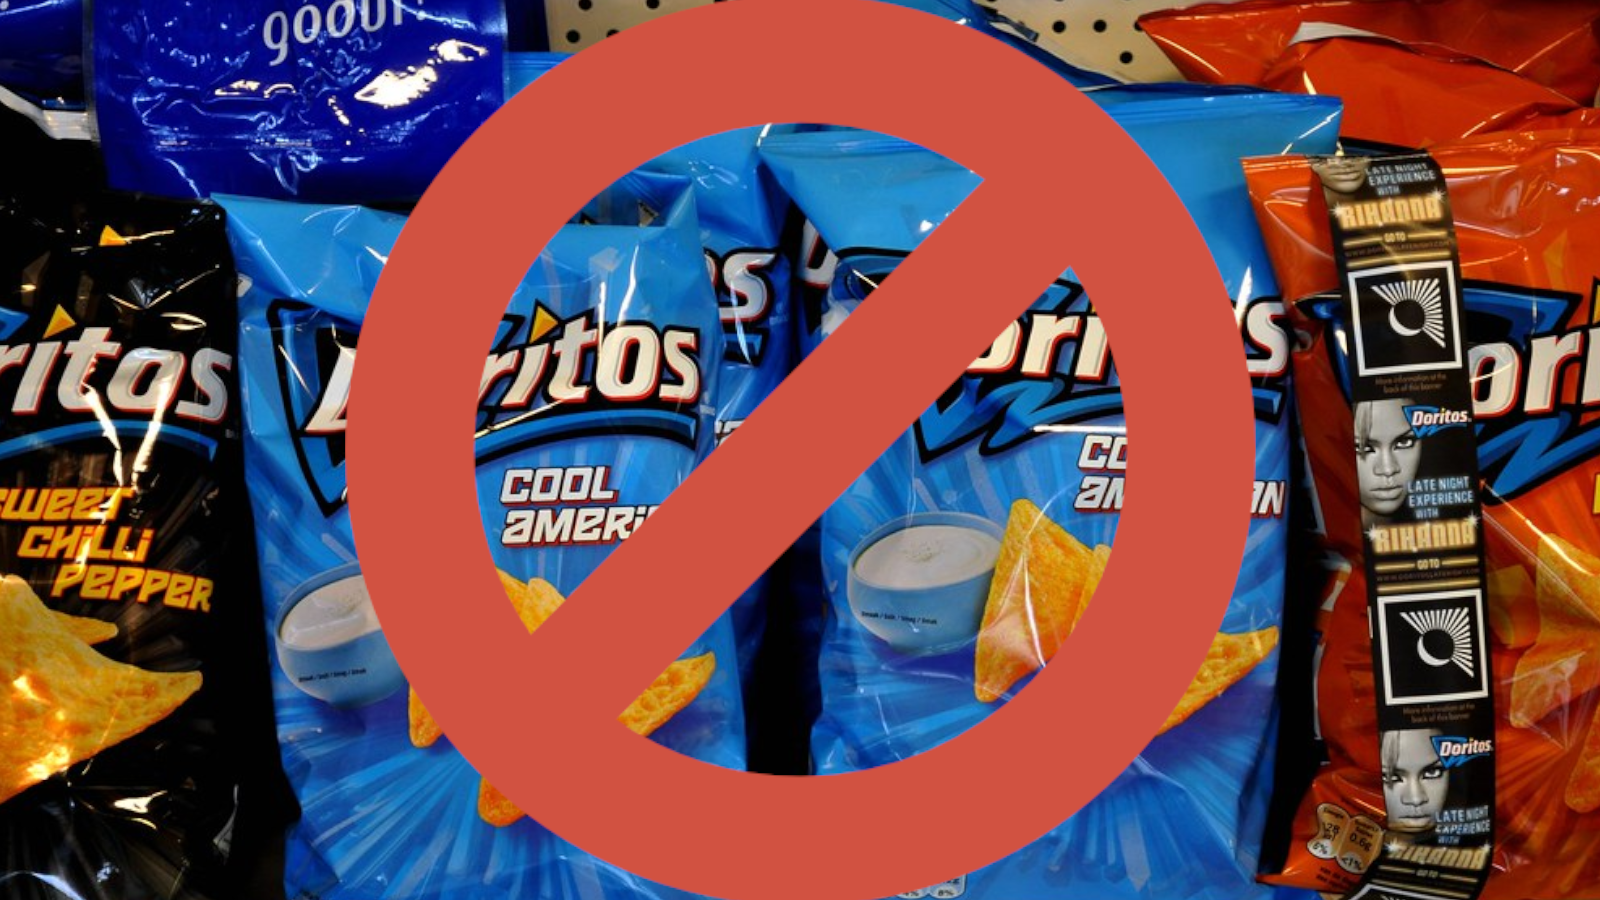 Social Media Calls For Doritos Boycott